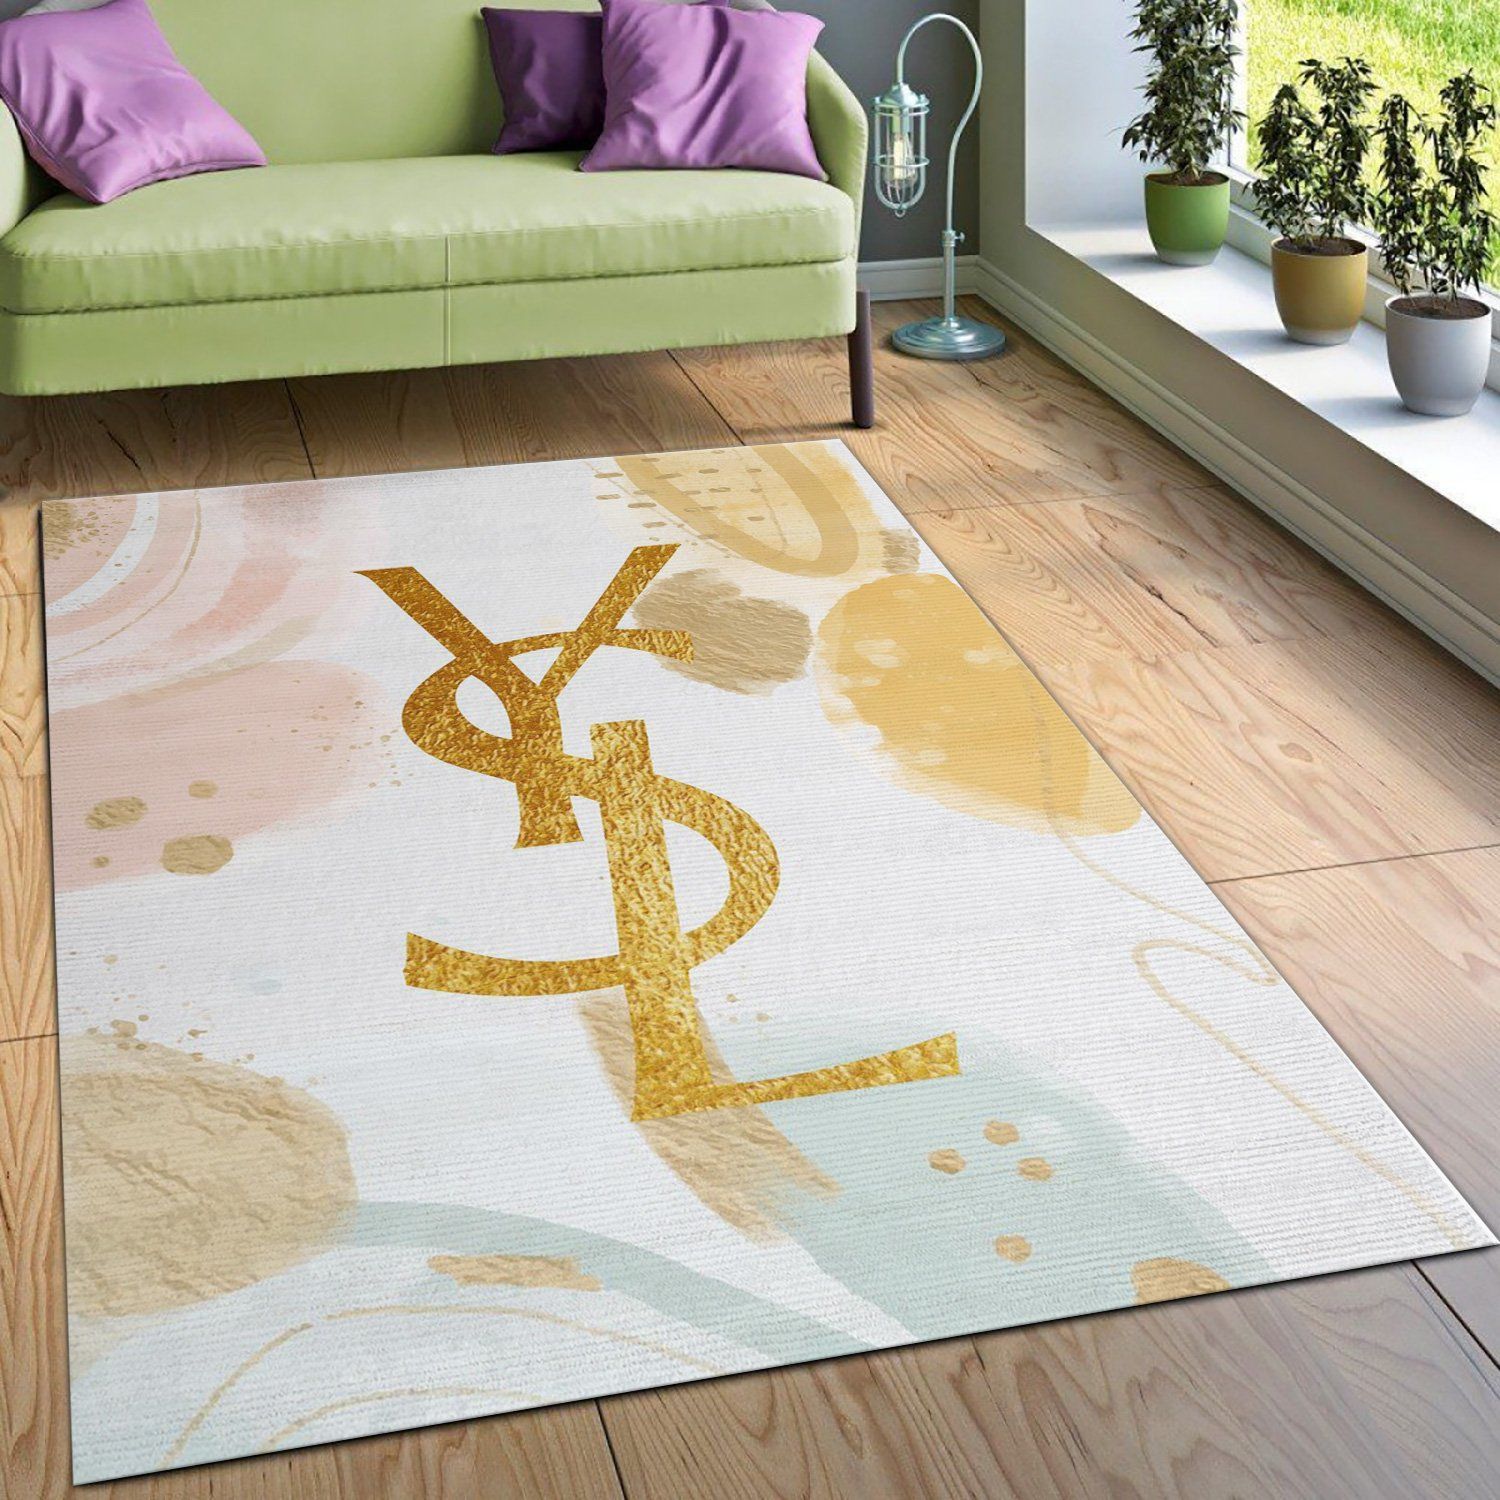 Ysl Yves Saint Lauren Rectangle Rug Bedroom Rug Home Decor Floor Decor - Indoor Outdoor Rugs 3